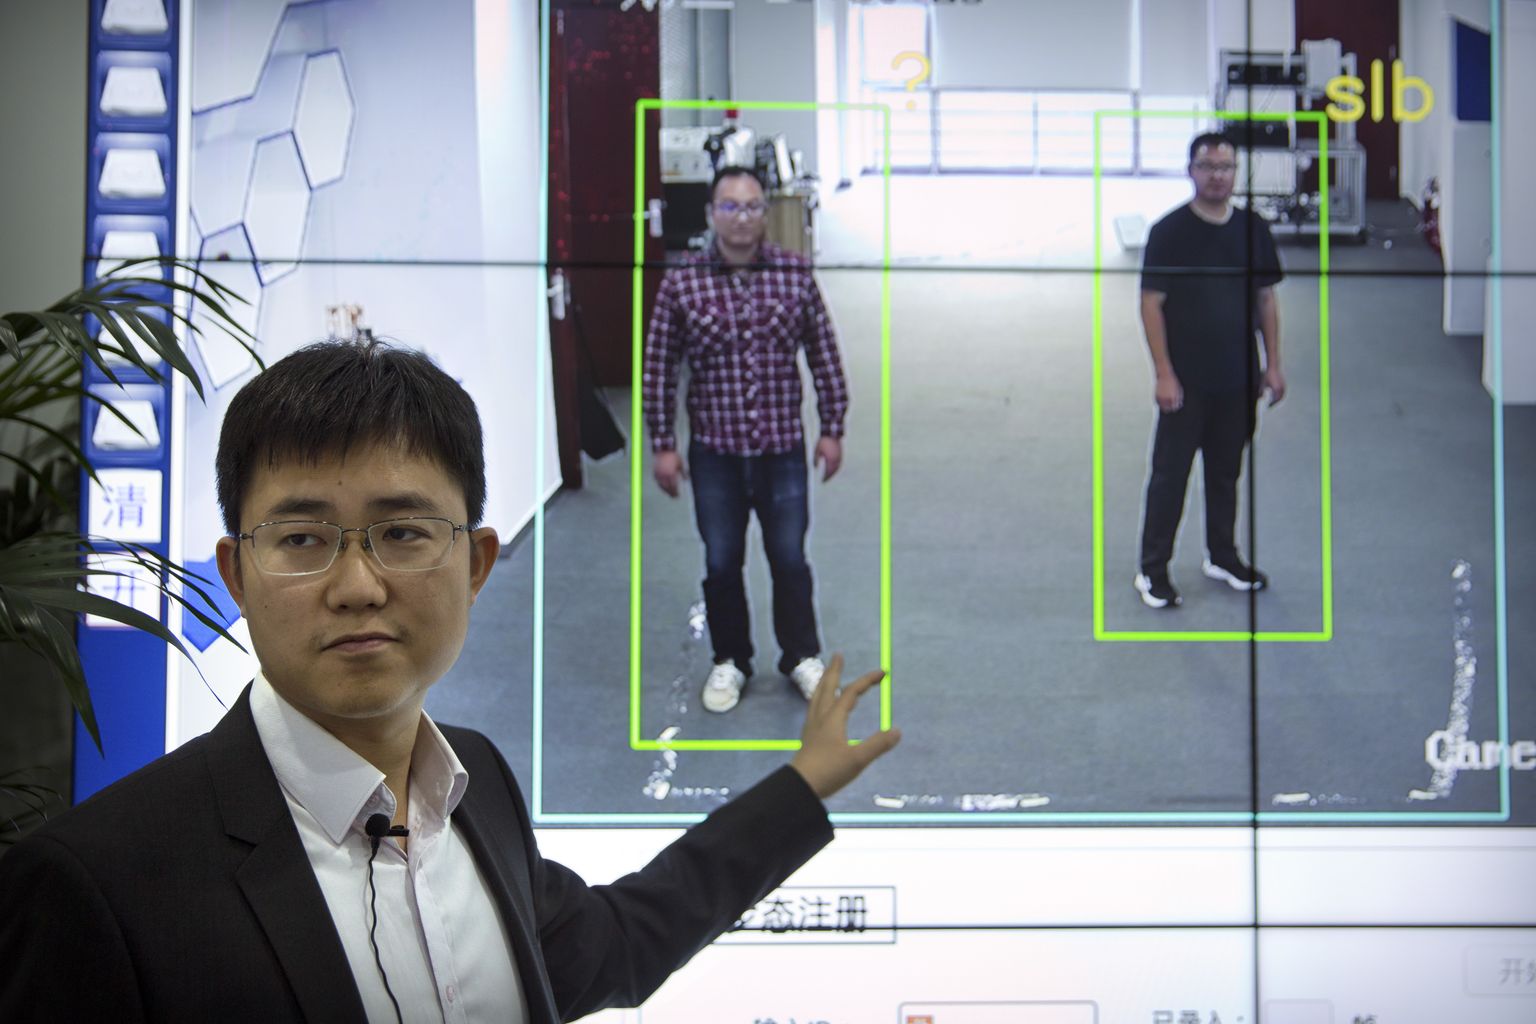 Hiina startup'i Watrix juht Huang Yongzhen tutvustab tarkvara, mis teeb isiku kindlaks ka siis kui ta nägu ei ole näotuvastuseks piisava teravusega kaadris. Pilt on illustratiivne ja tarkvara ei ole Tallinkiga seotud